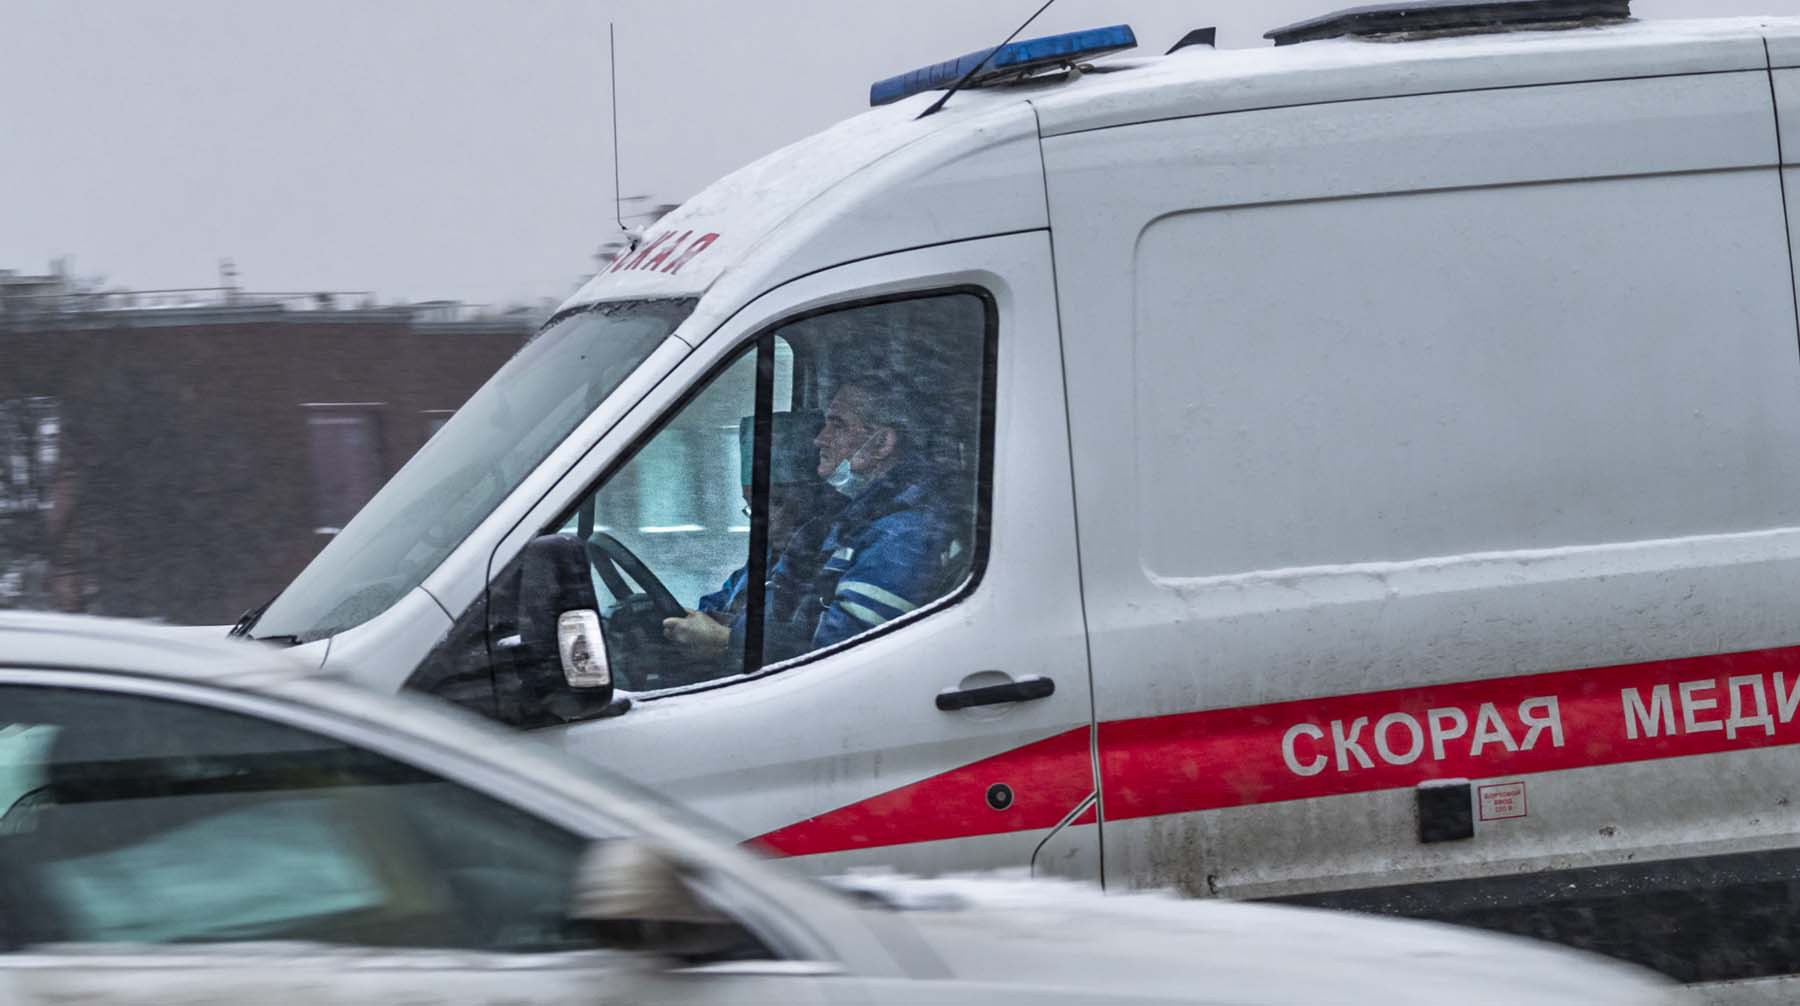 Dailystorm - Мальчик погиб при катании на «ватрушке» в Москве